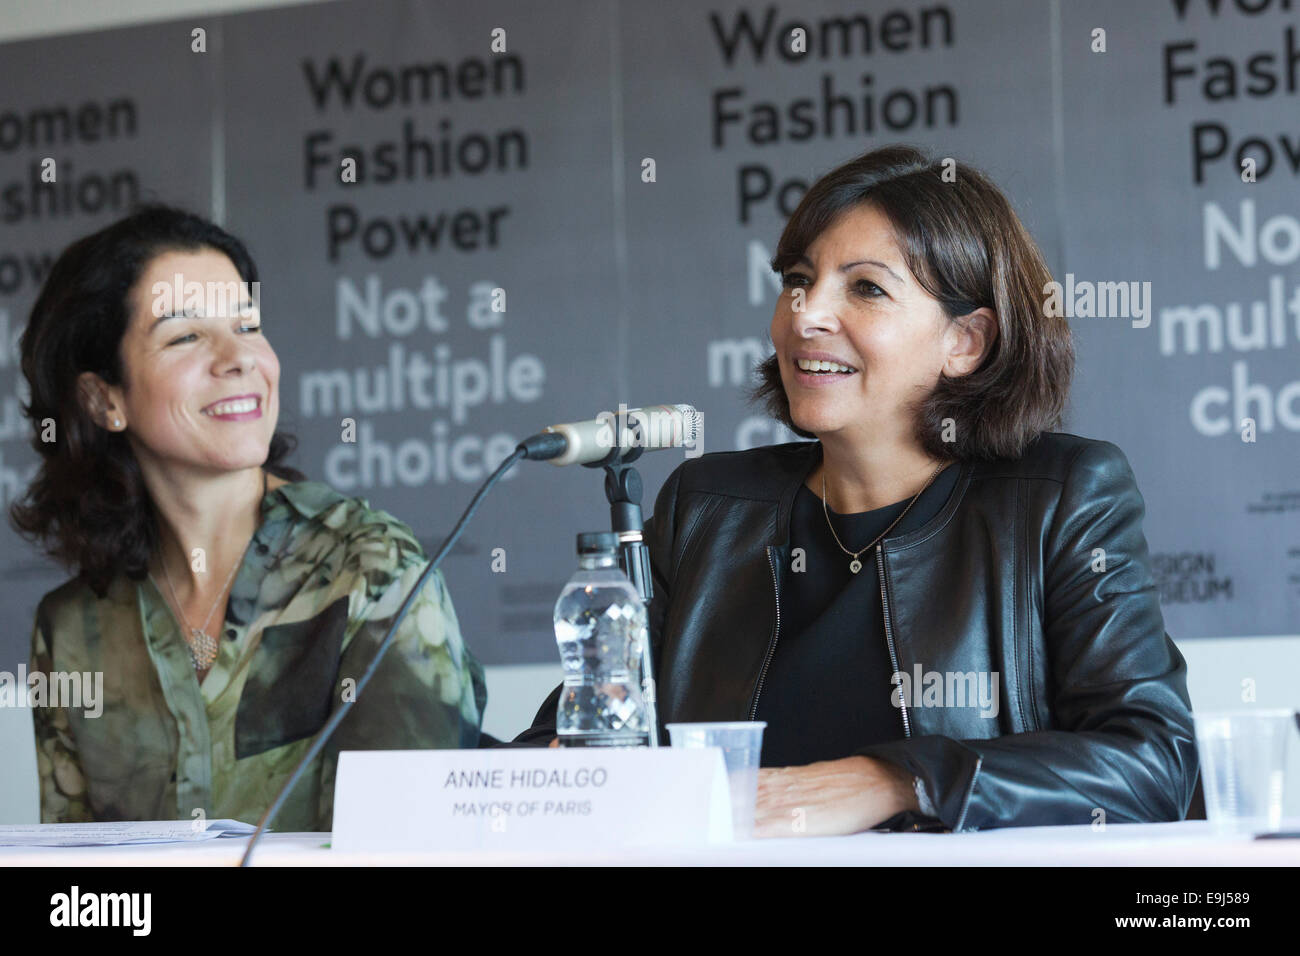 Anne Hidalgo, maire de Paris, s'ouvre l'exposition "Les femmes fashion power' au Design Museum, Londres. avec alice noir, à gauche. Banque D'Images